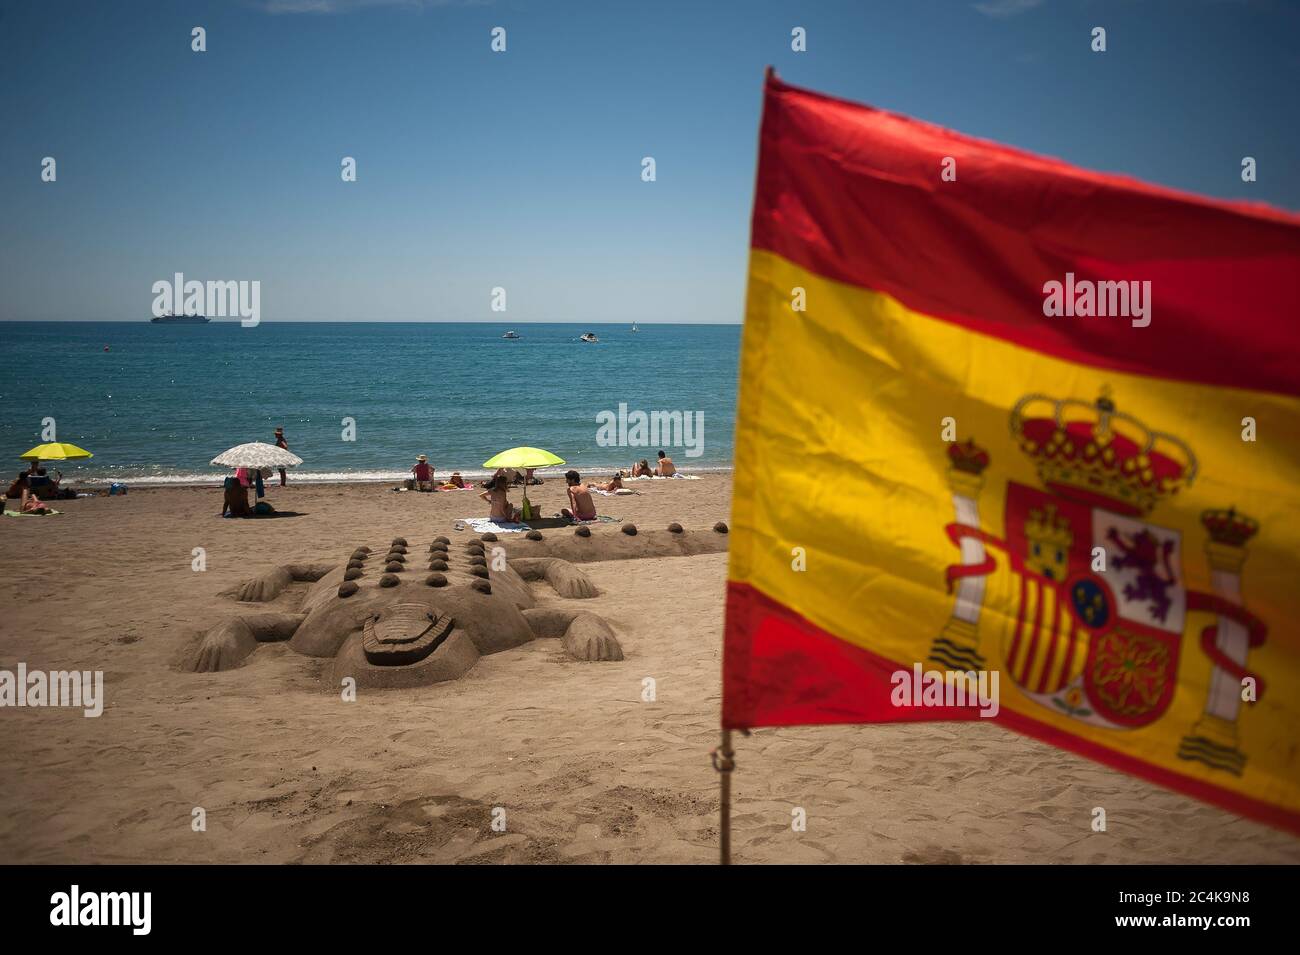 Une sculpture de crocodile de sable est vue à la plage de la Caleta comme un drapeau espagnol vagues pendant une chaude journée d'été.UNE vague de chaleur traverse le pays avec des températures élevées, selon l'Agence espagnole de météorologie. Banque D'Images